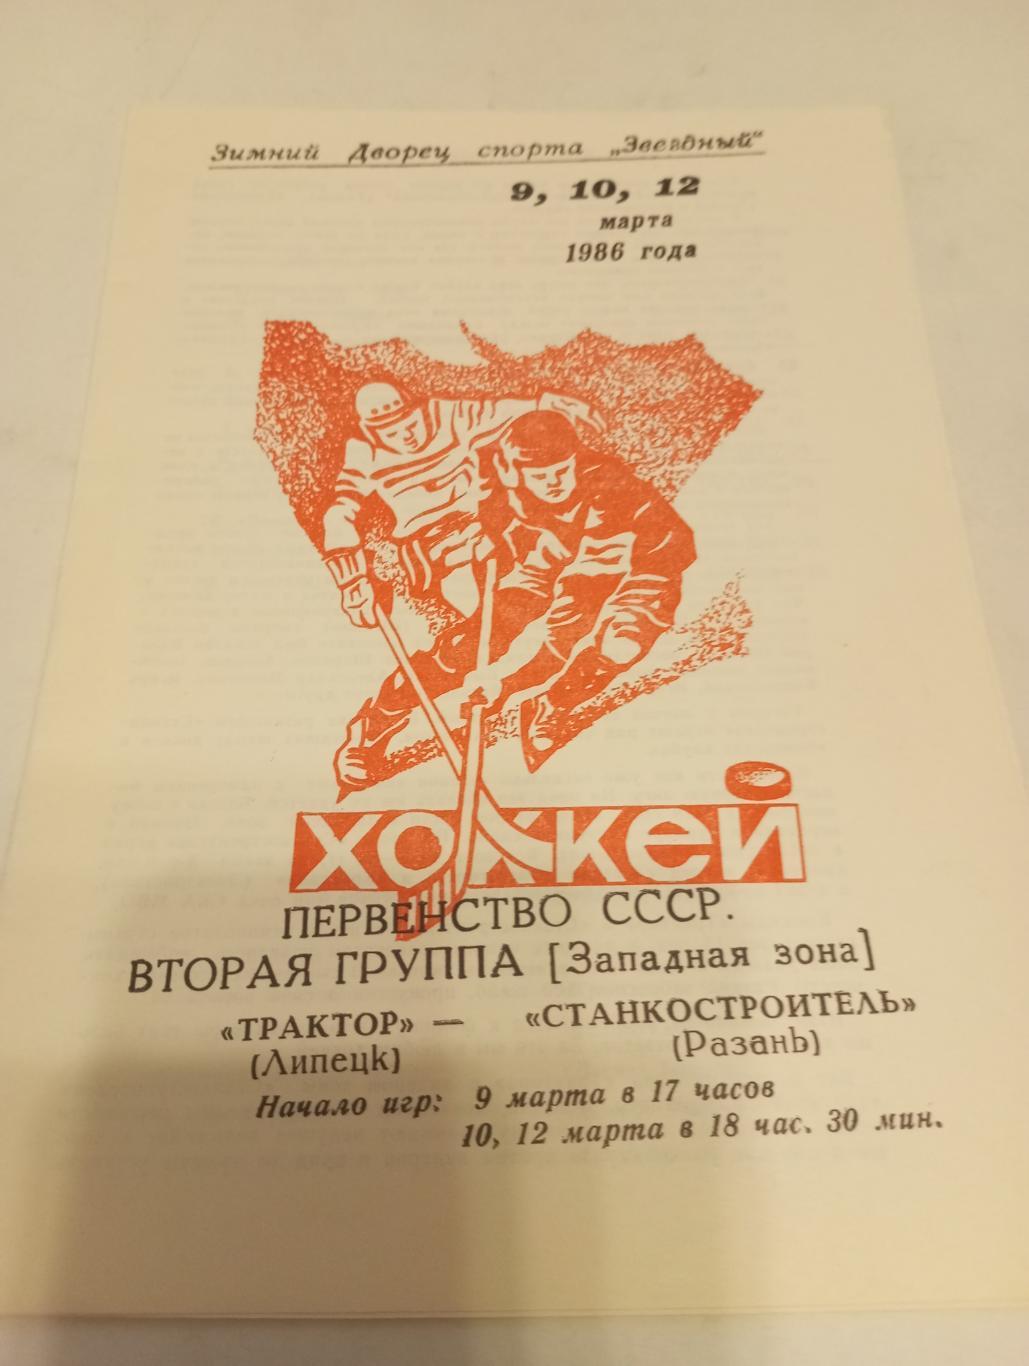 Трактор (Липецк ) - Станкостроитель ( Рязань.). 9/10/12.03.1986.